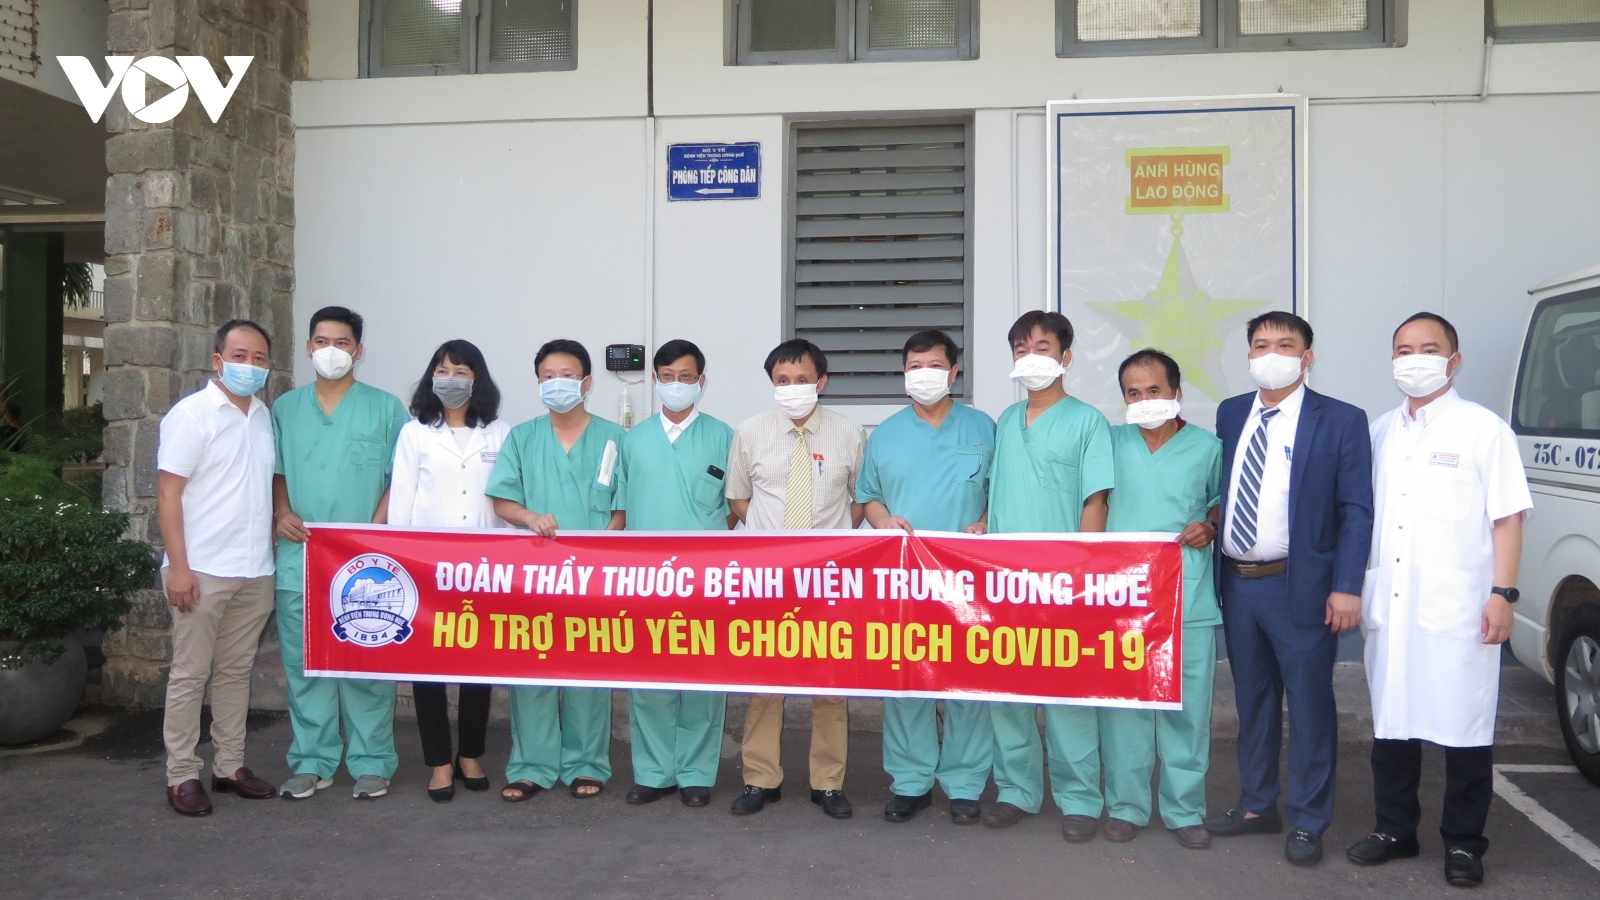 Các bác sĩ Bệnh viện Trung ương Huế vào Phú Yên hỗ trợ chống dịch Covid-19